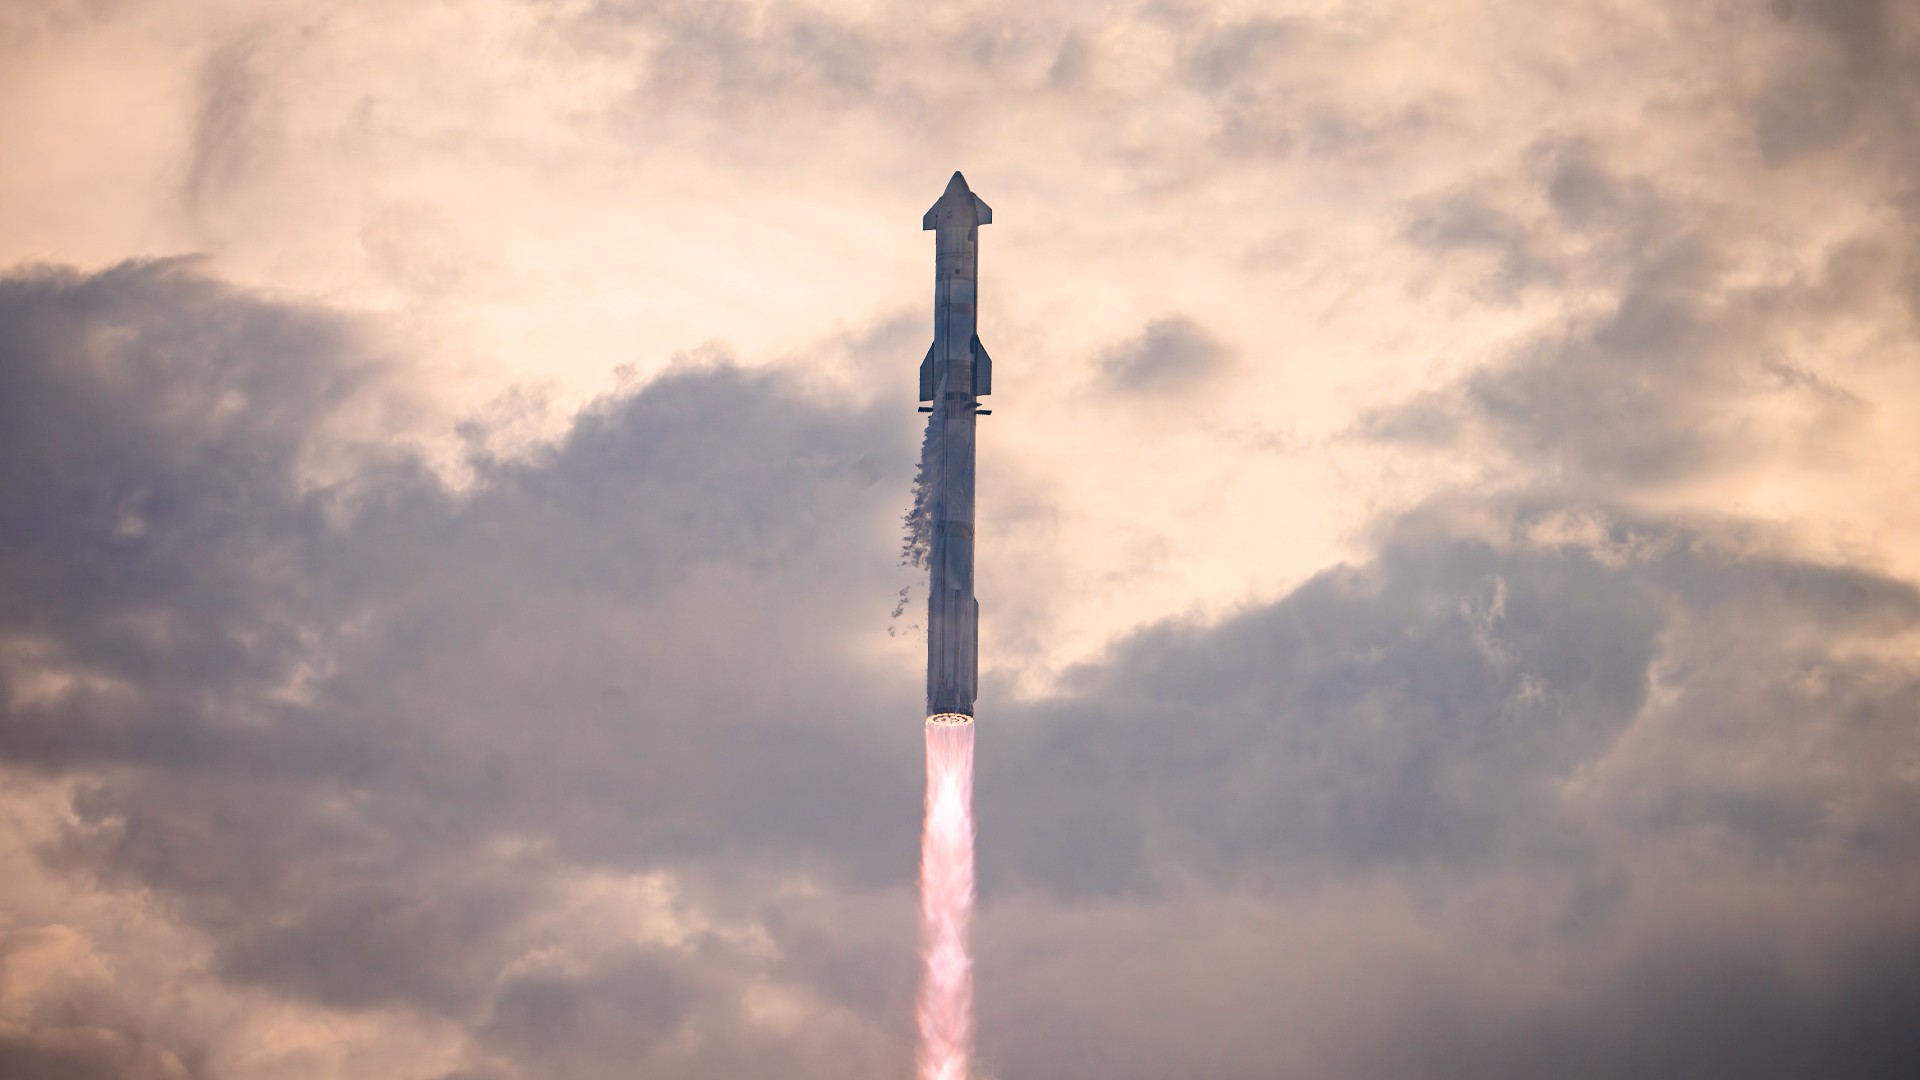 La nave espacial SpaceX tendrá 500 pies de altura para prepararse para las misiones a Marte, dice Elon Musk (video)